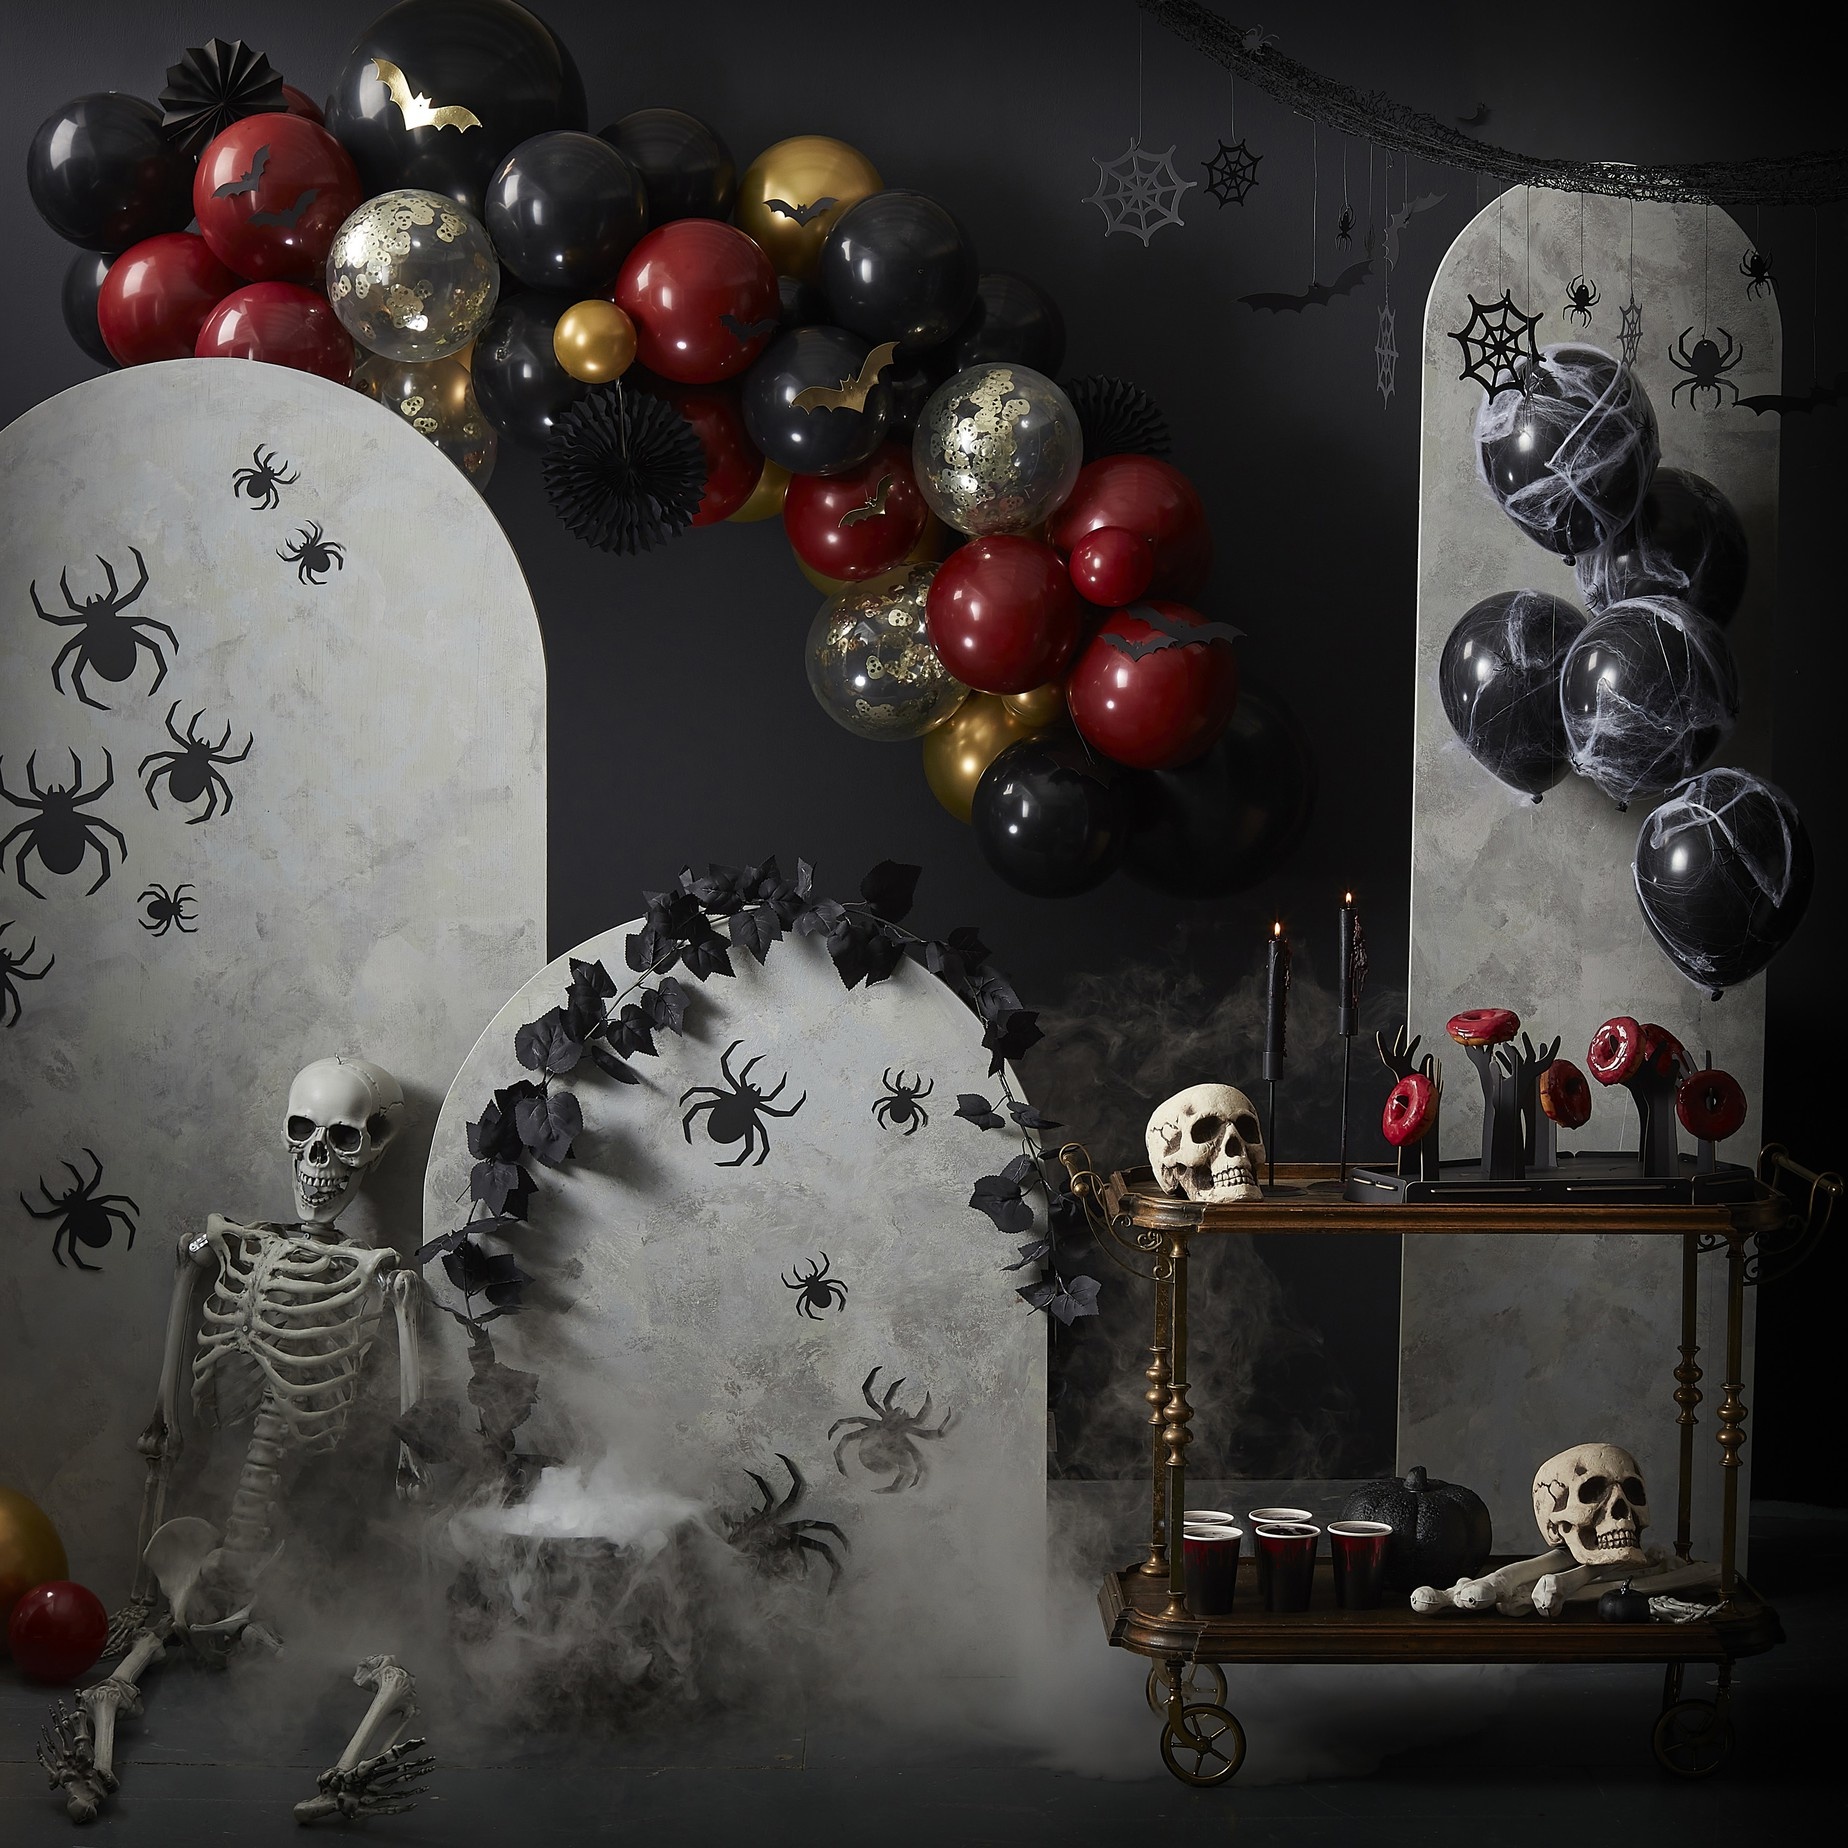 Raamsticker vleermuizen - Fright Night - Halloween decoratie - 2stuks-3